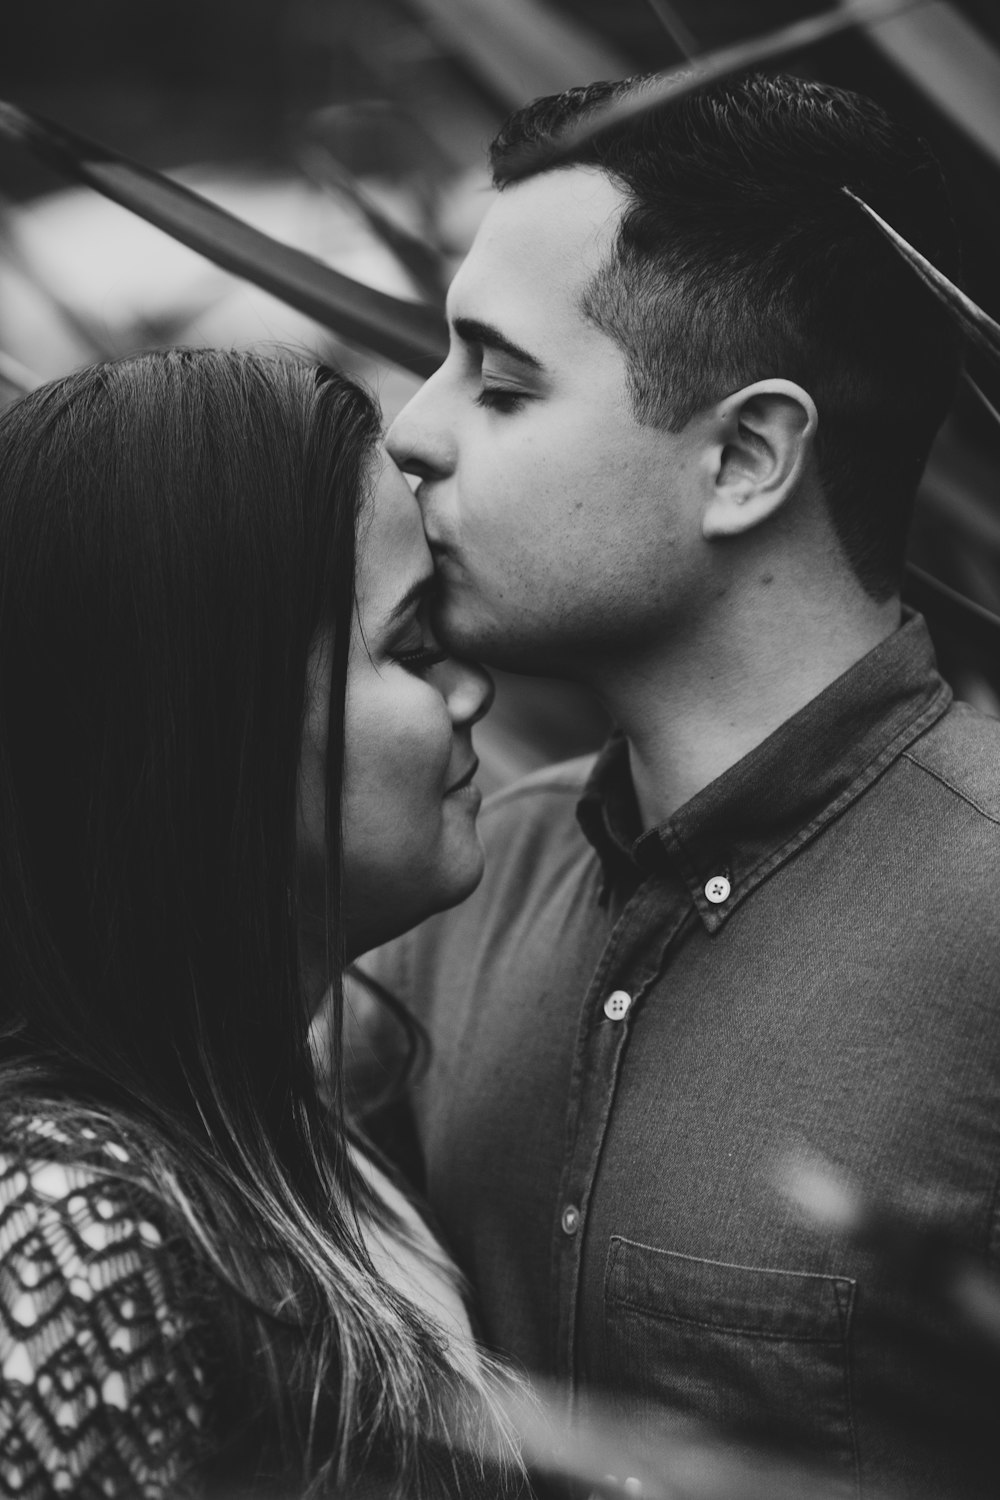 회색조 사진에 키스하는 남자와 여자